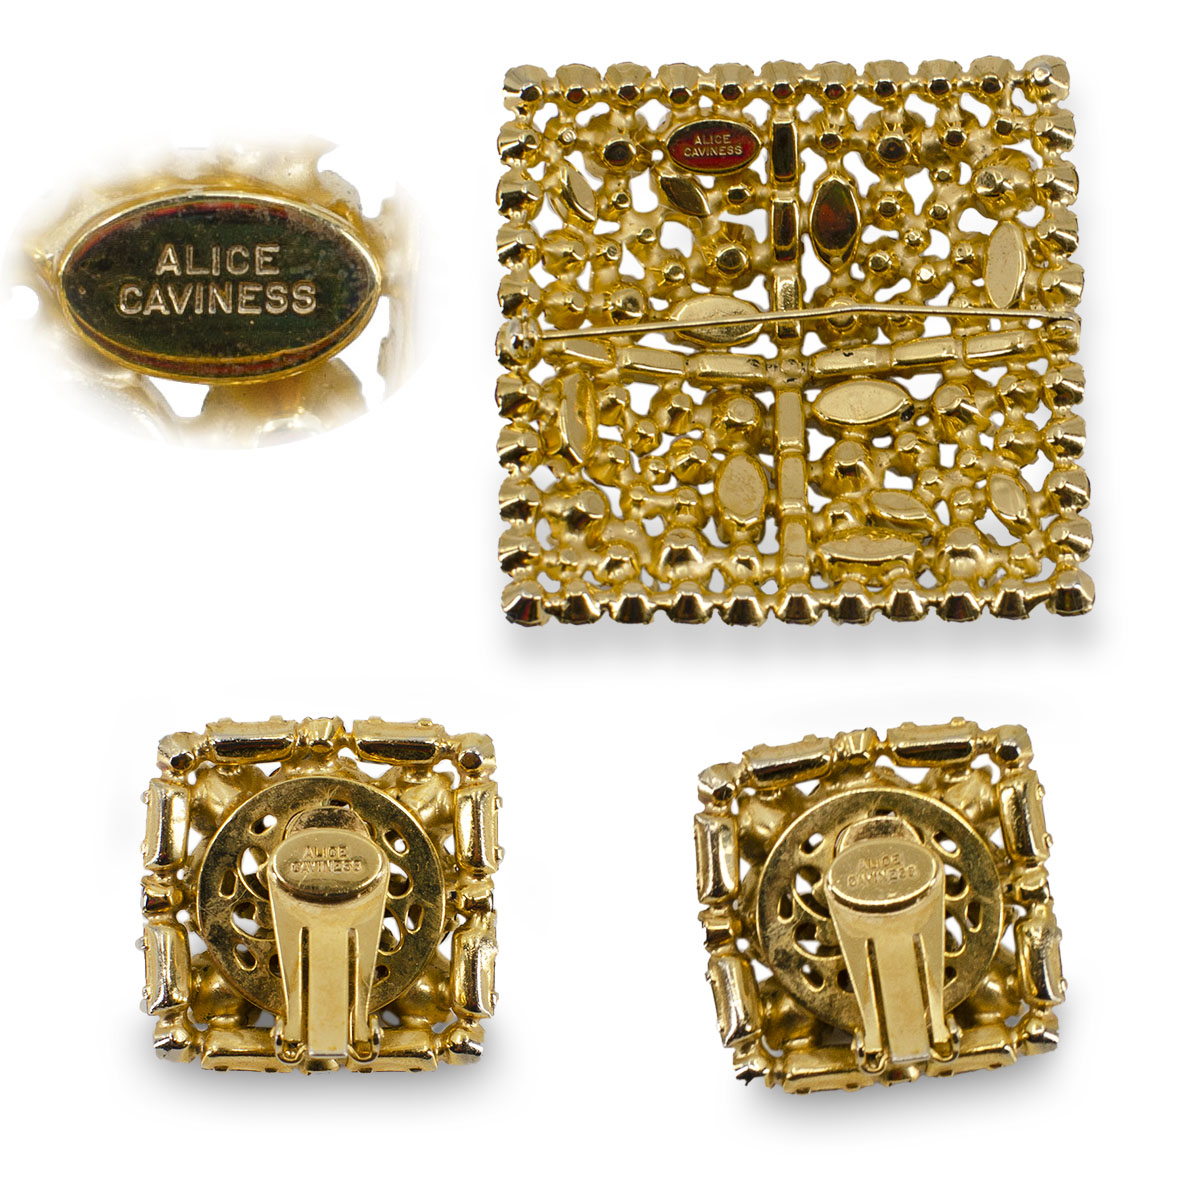 alice caviness jewelry mark